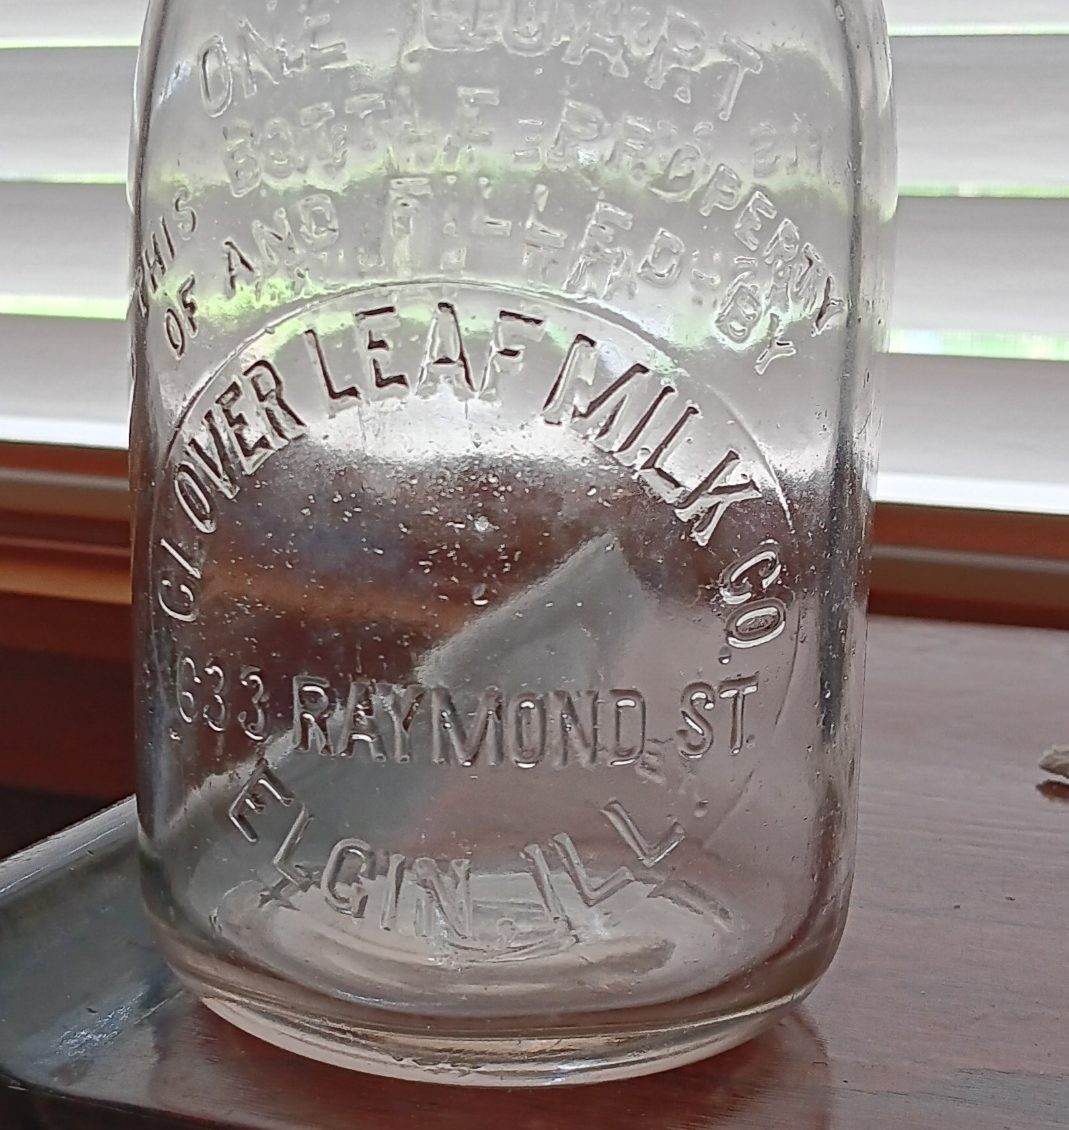 Vintage Bottle. Old Clover Leaf Milk Co Milk Bottle Elgin Illinois. One Quart. 